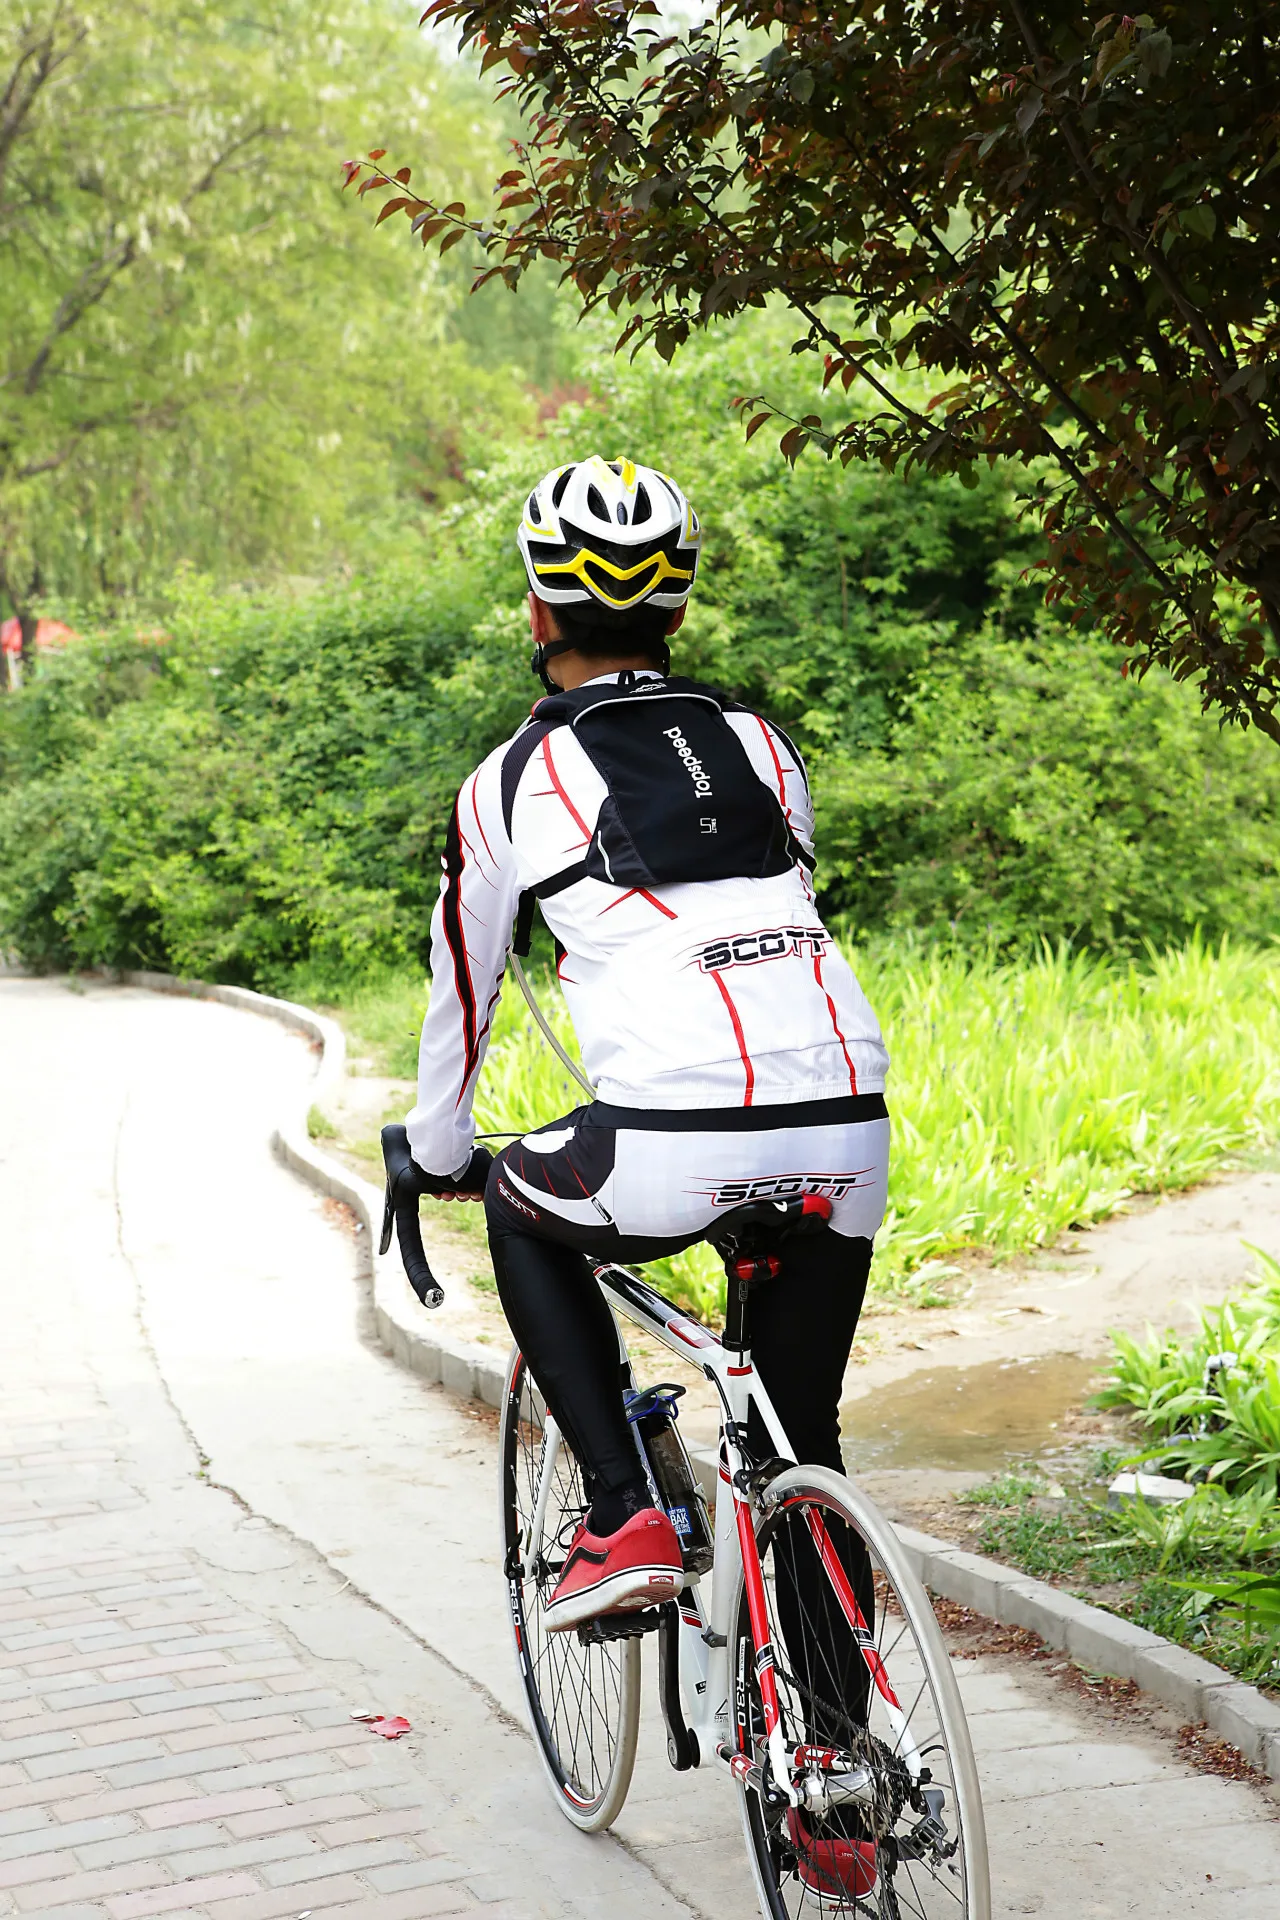 LOCALLION новые уличные альпинистские рюкзаки для бега Велоспорт рюкзак дышащий Сверхлегкий велосипедный мешок для езды на велосипеде